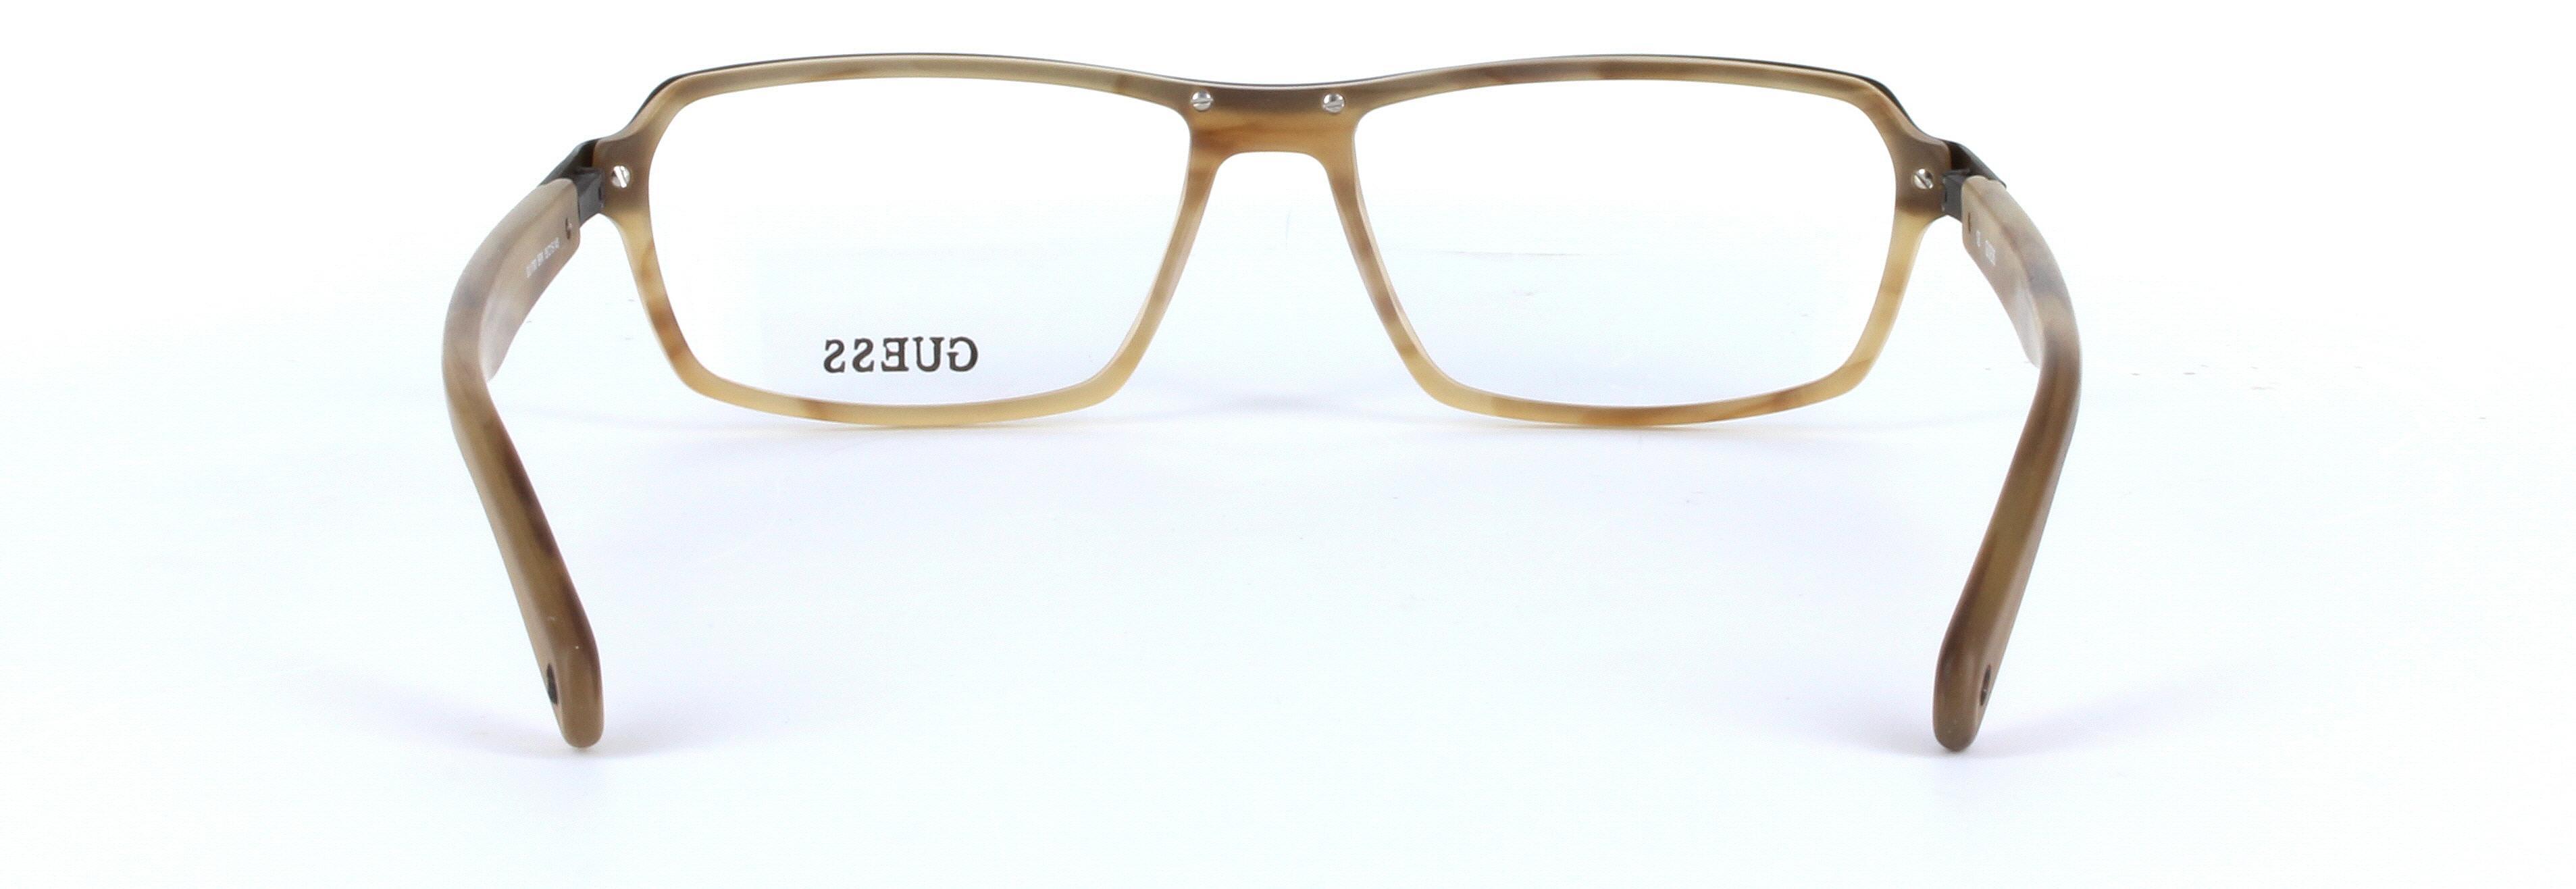 GUESS (GU1790-BRN) Brown Full Rim Rectangular Acetate Glasses - Image View 3